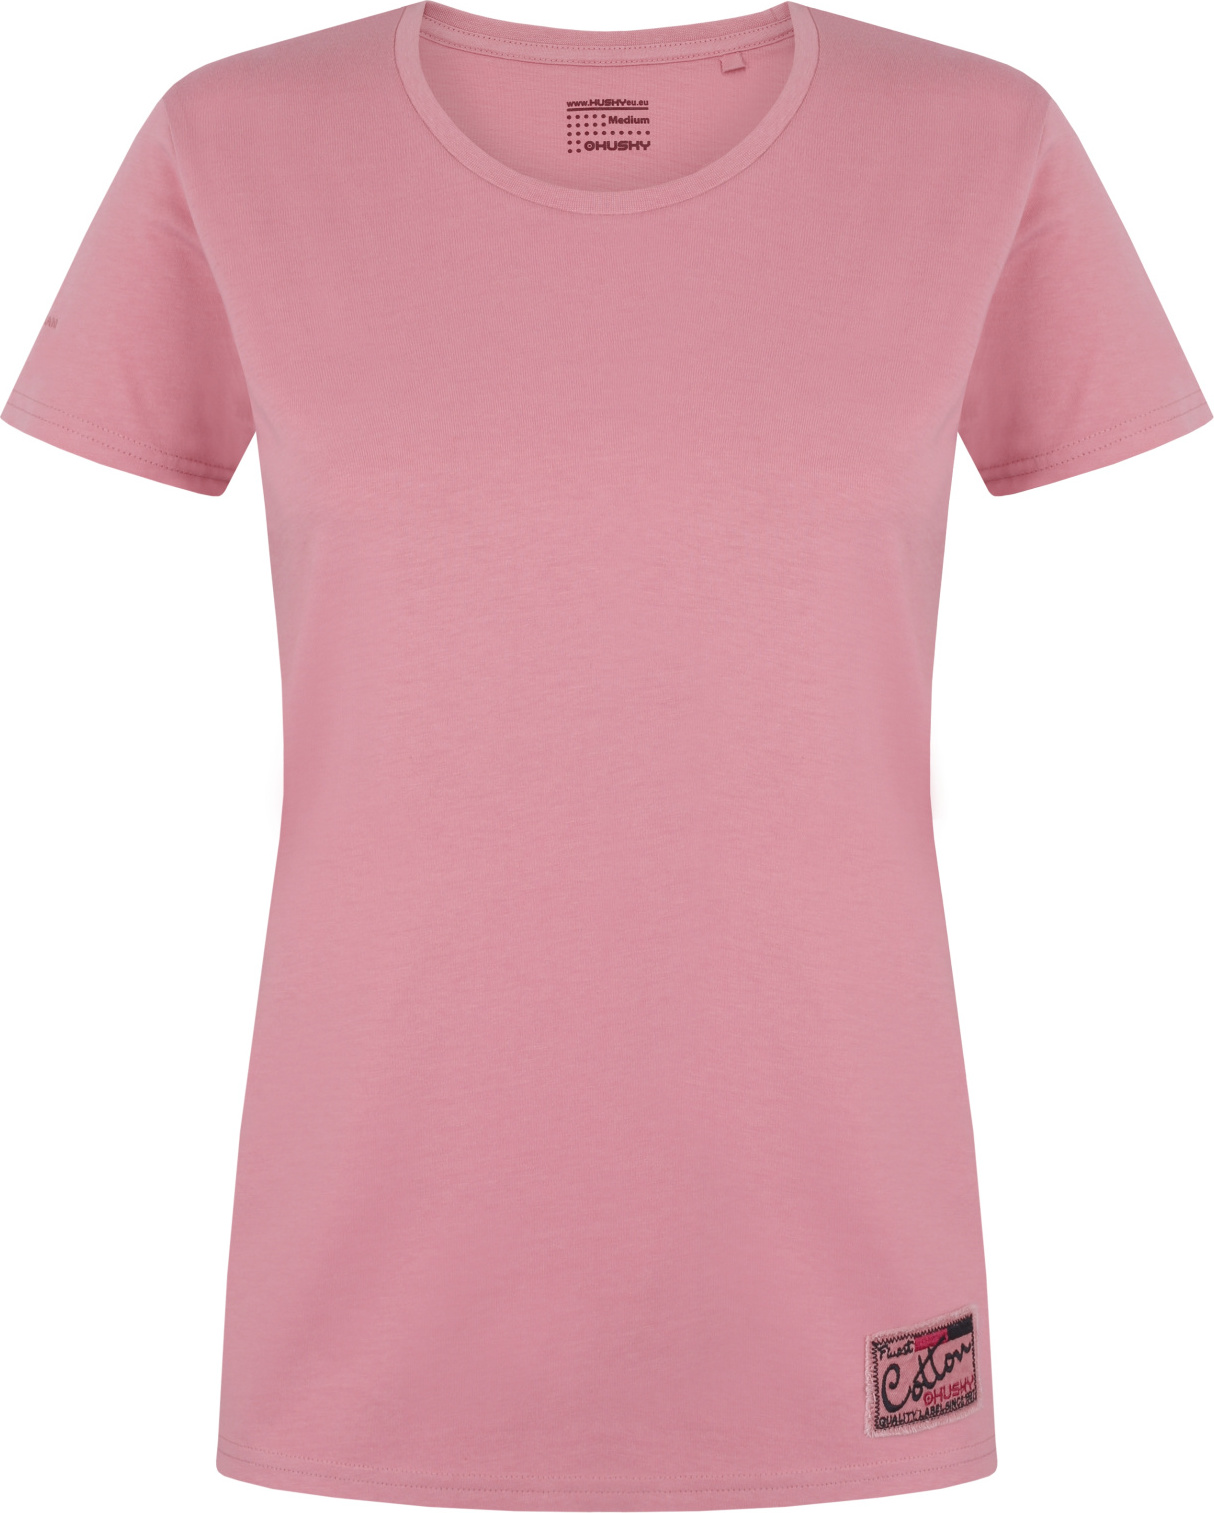 Dámské bavlněné triko HUSKY Tee Base růžové Velikost: S